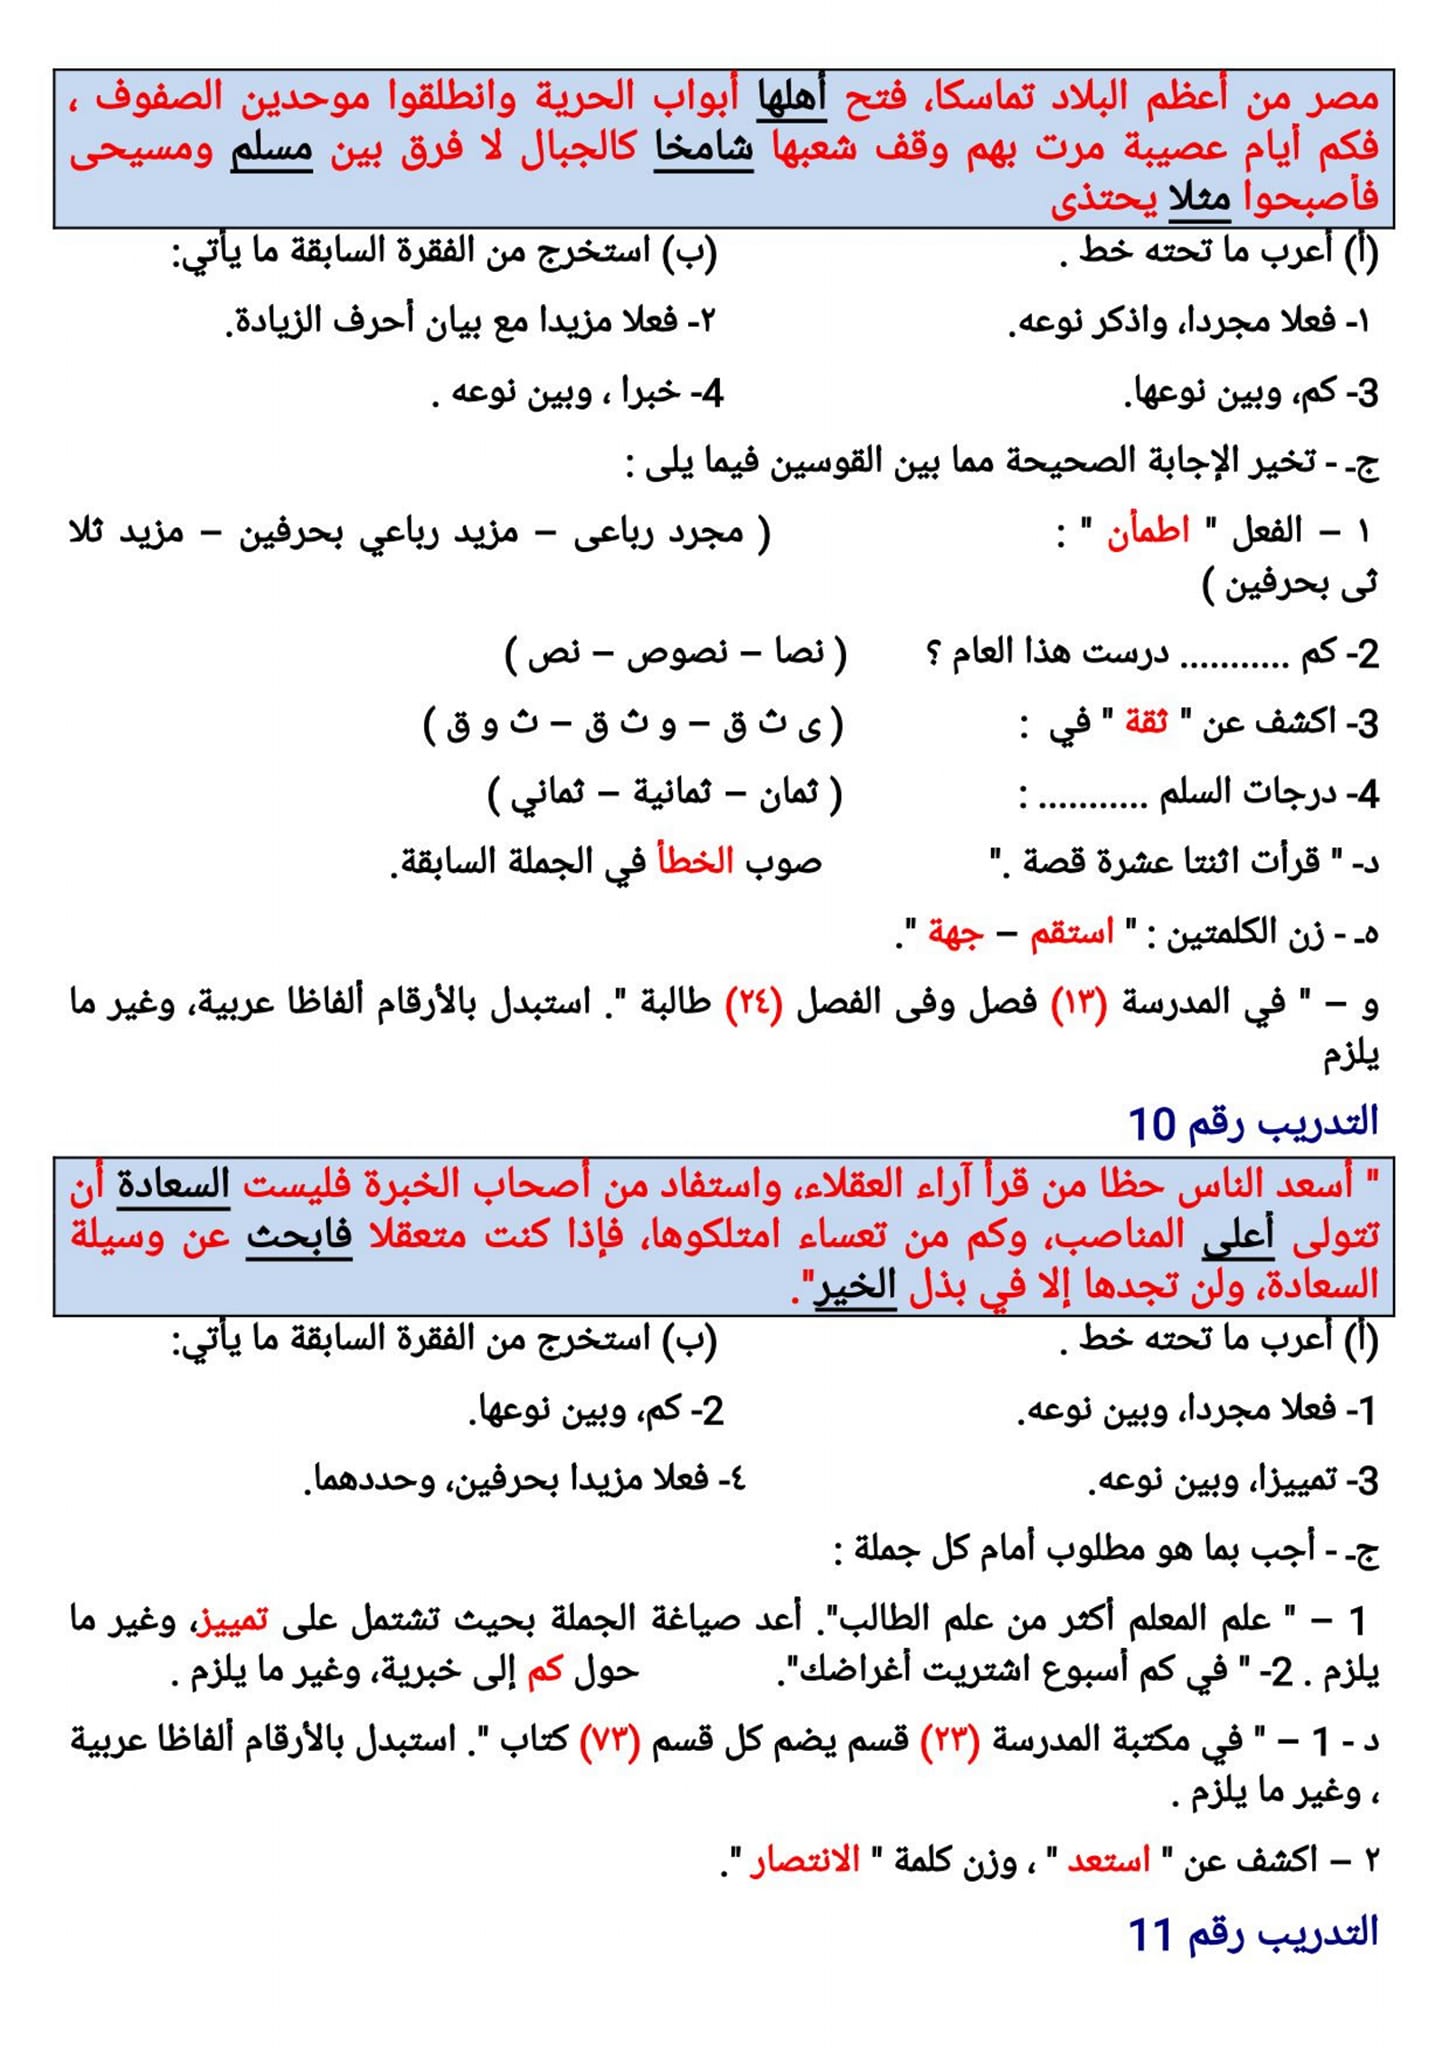 مدرس اول ١٠٠ قطعة نحو فى اللغة العربية للصف الثاني الإعدادي الترم الثانى أ/ أحمد صالح عبد	